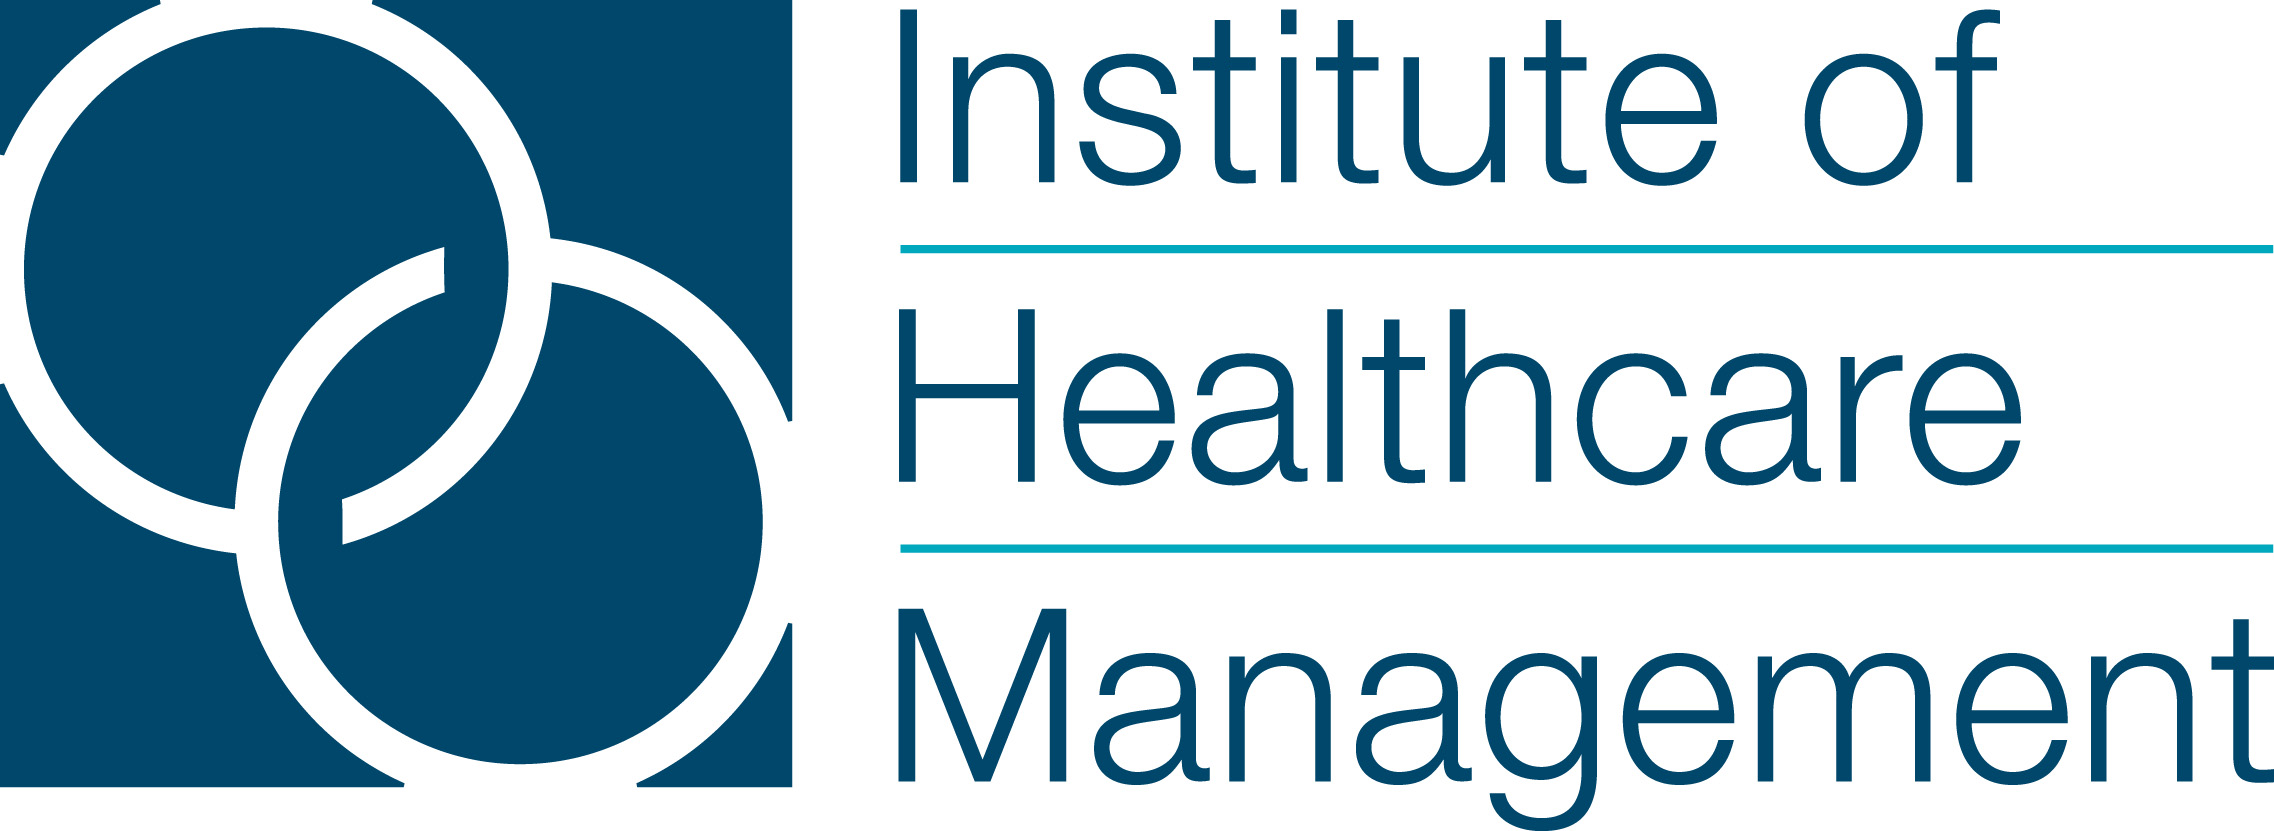 Institute of Healthcare Management